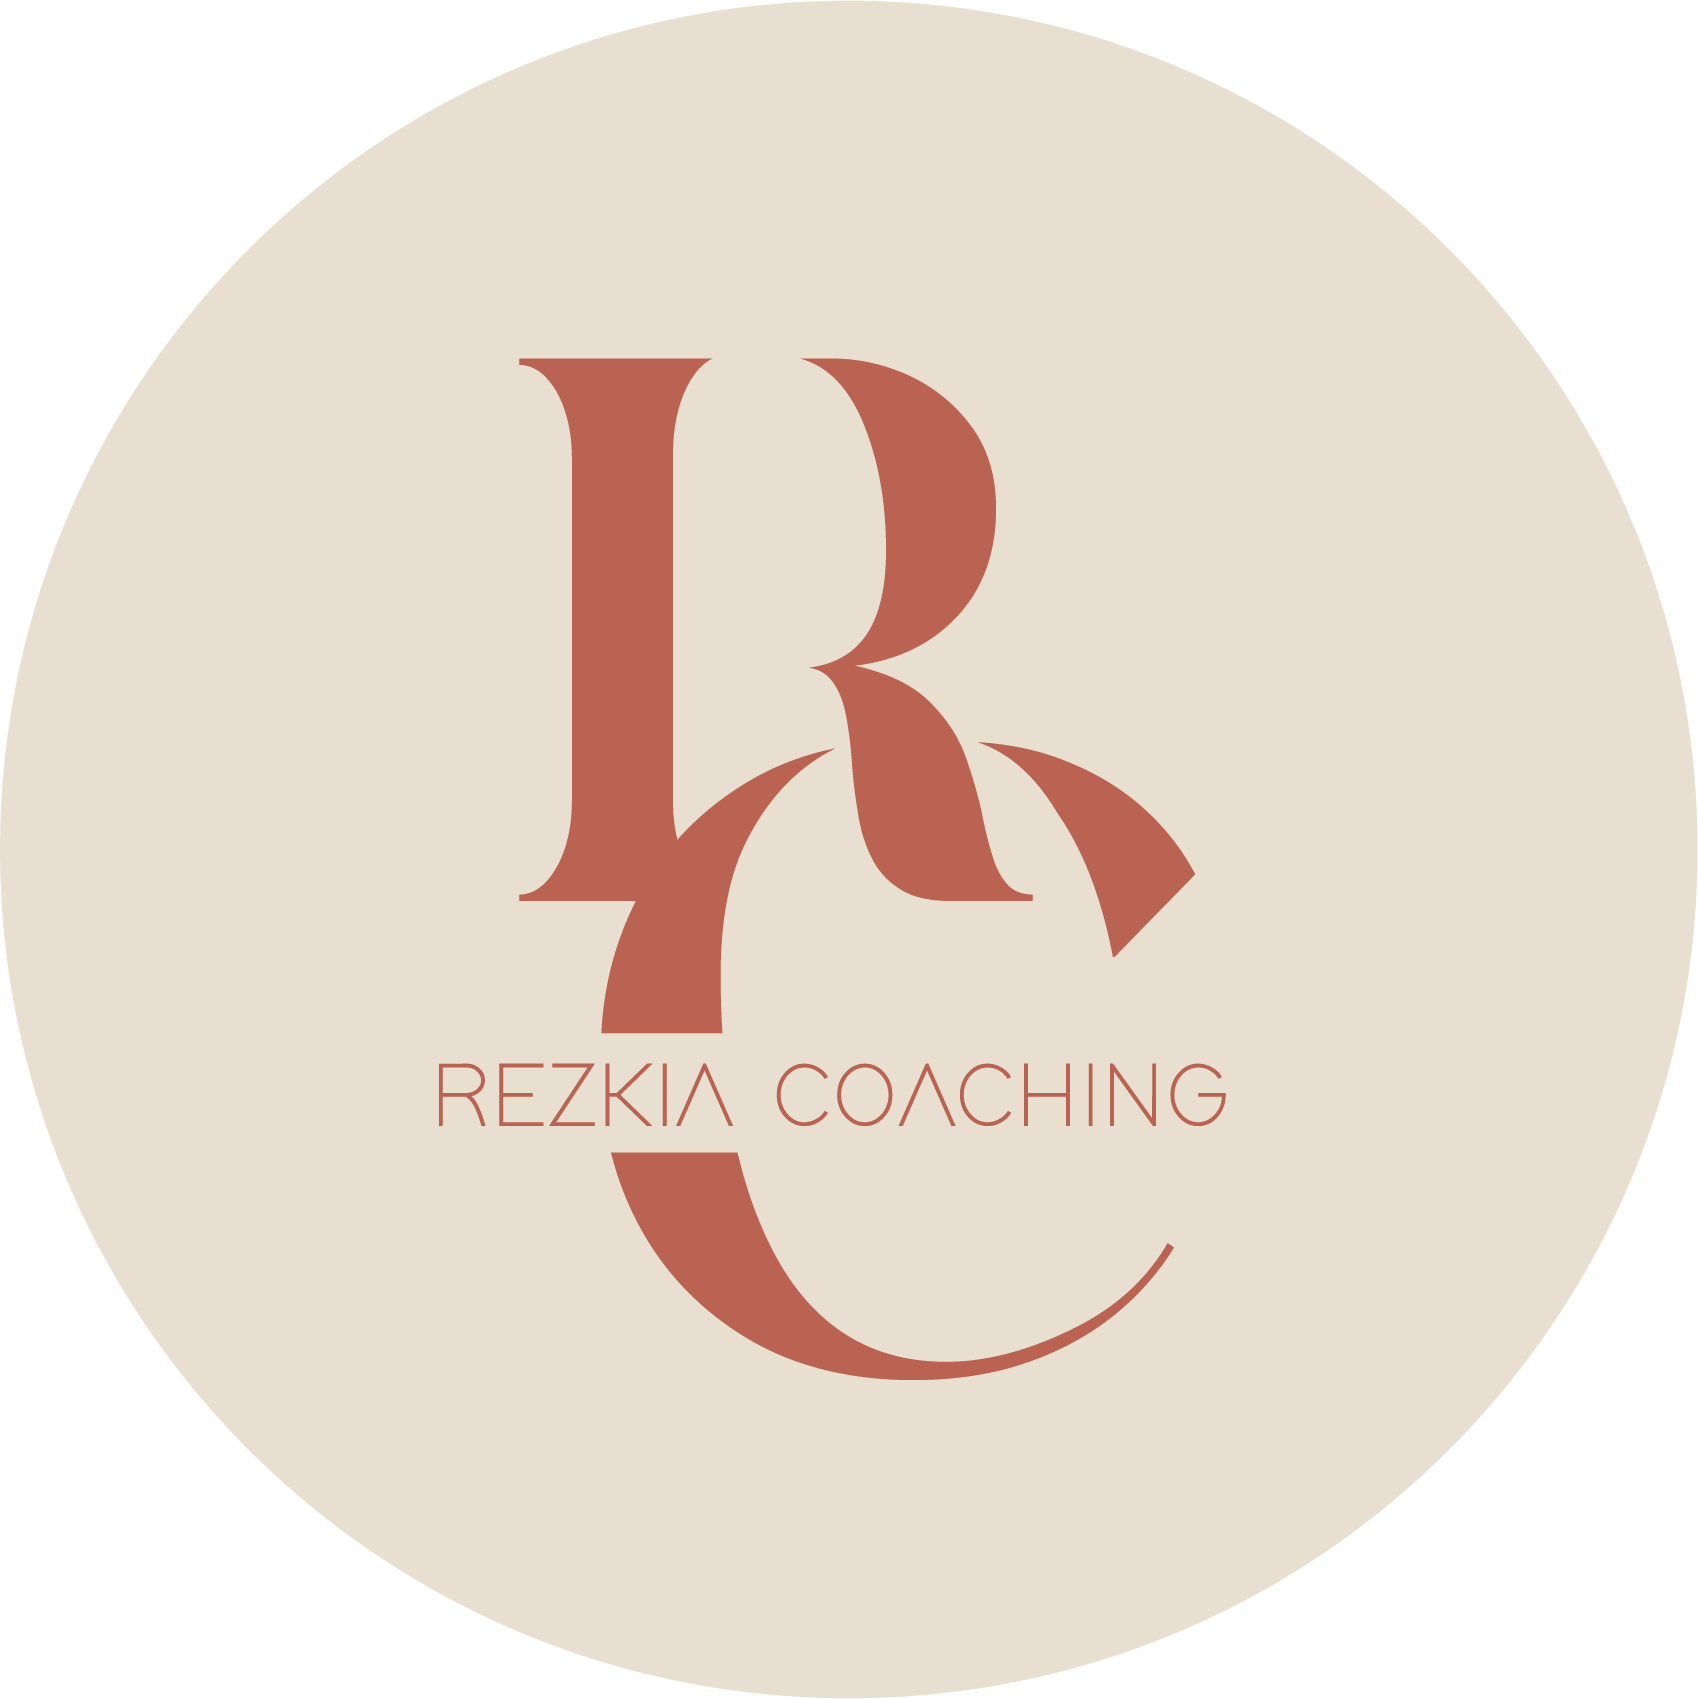 Rezkia Coaching